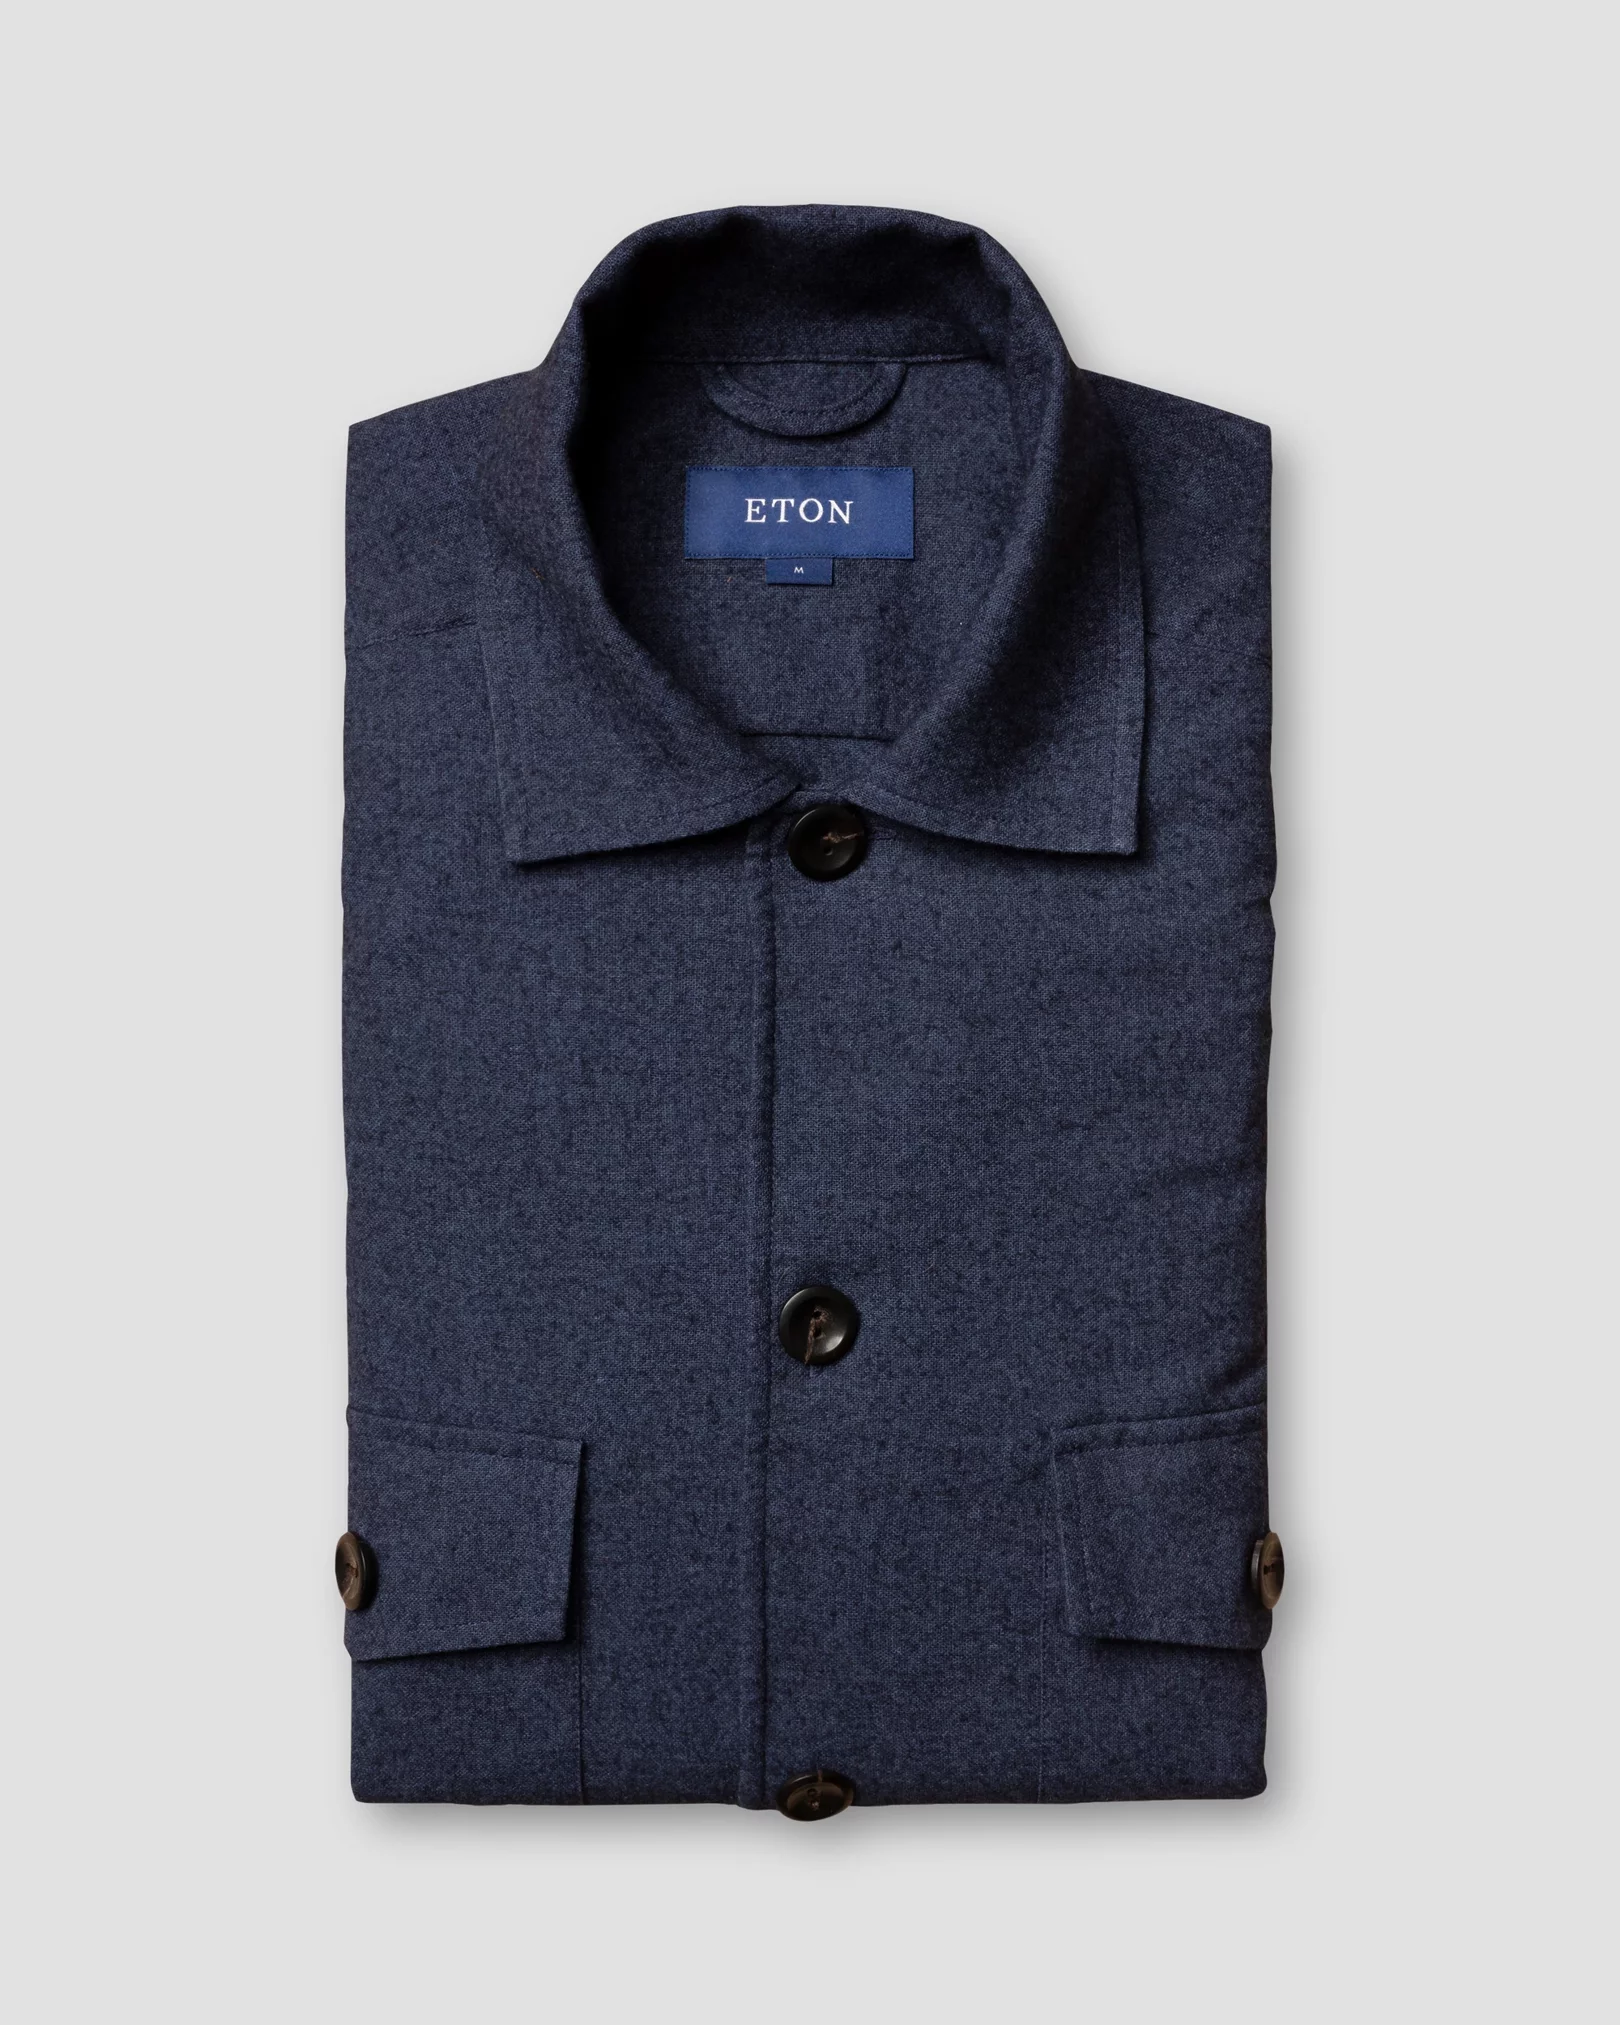 Eton - dark blue cotton wool cashmere overshirt turn down single cuff pointed strap regular